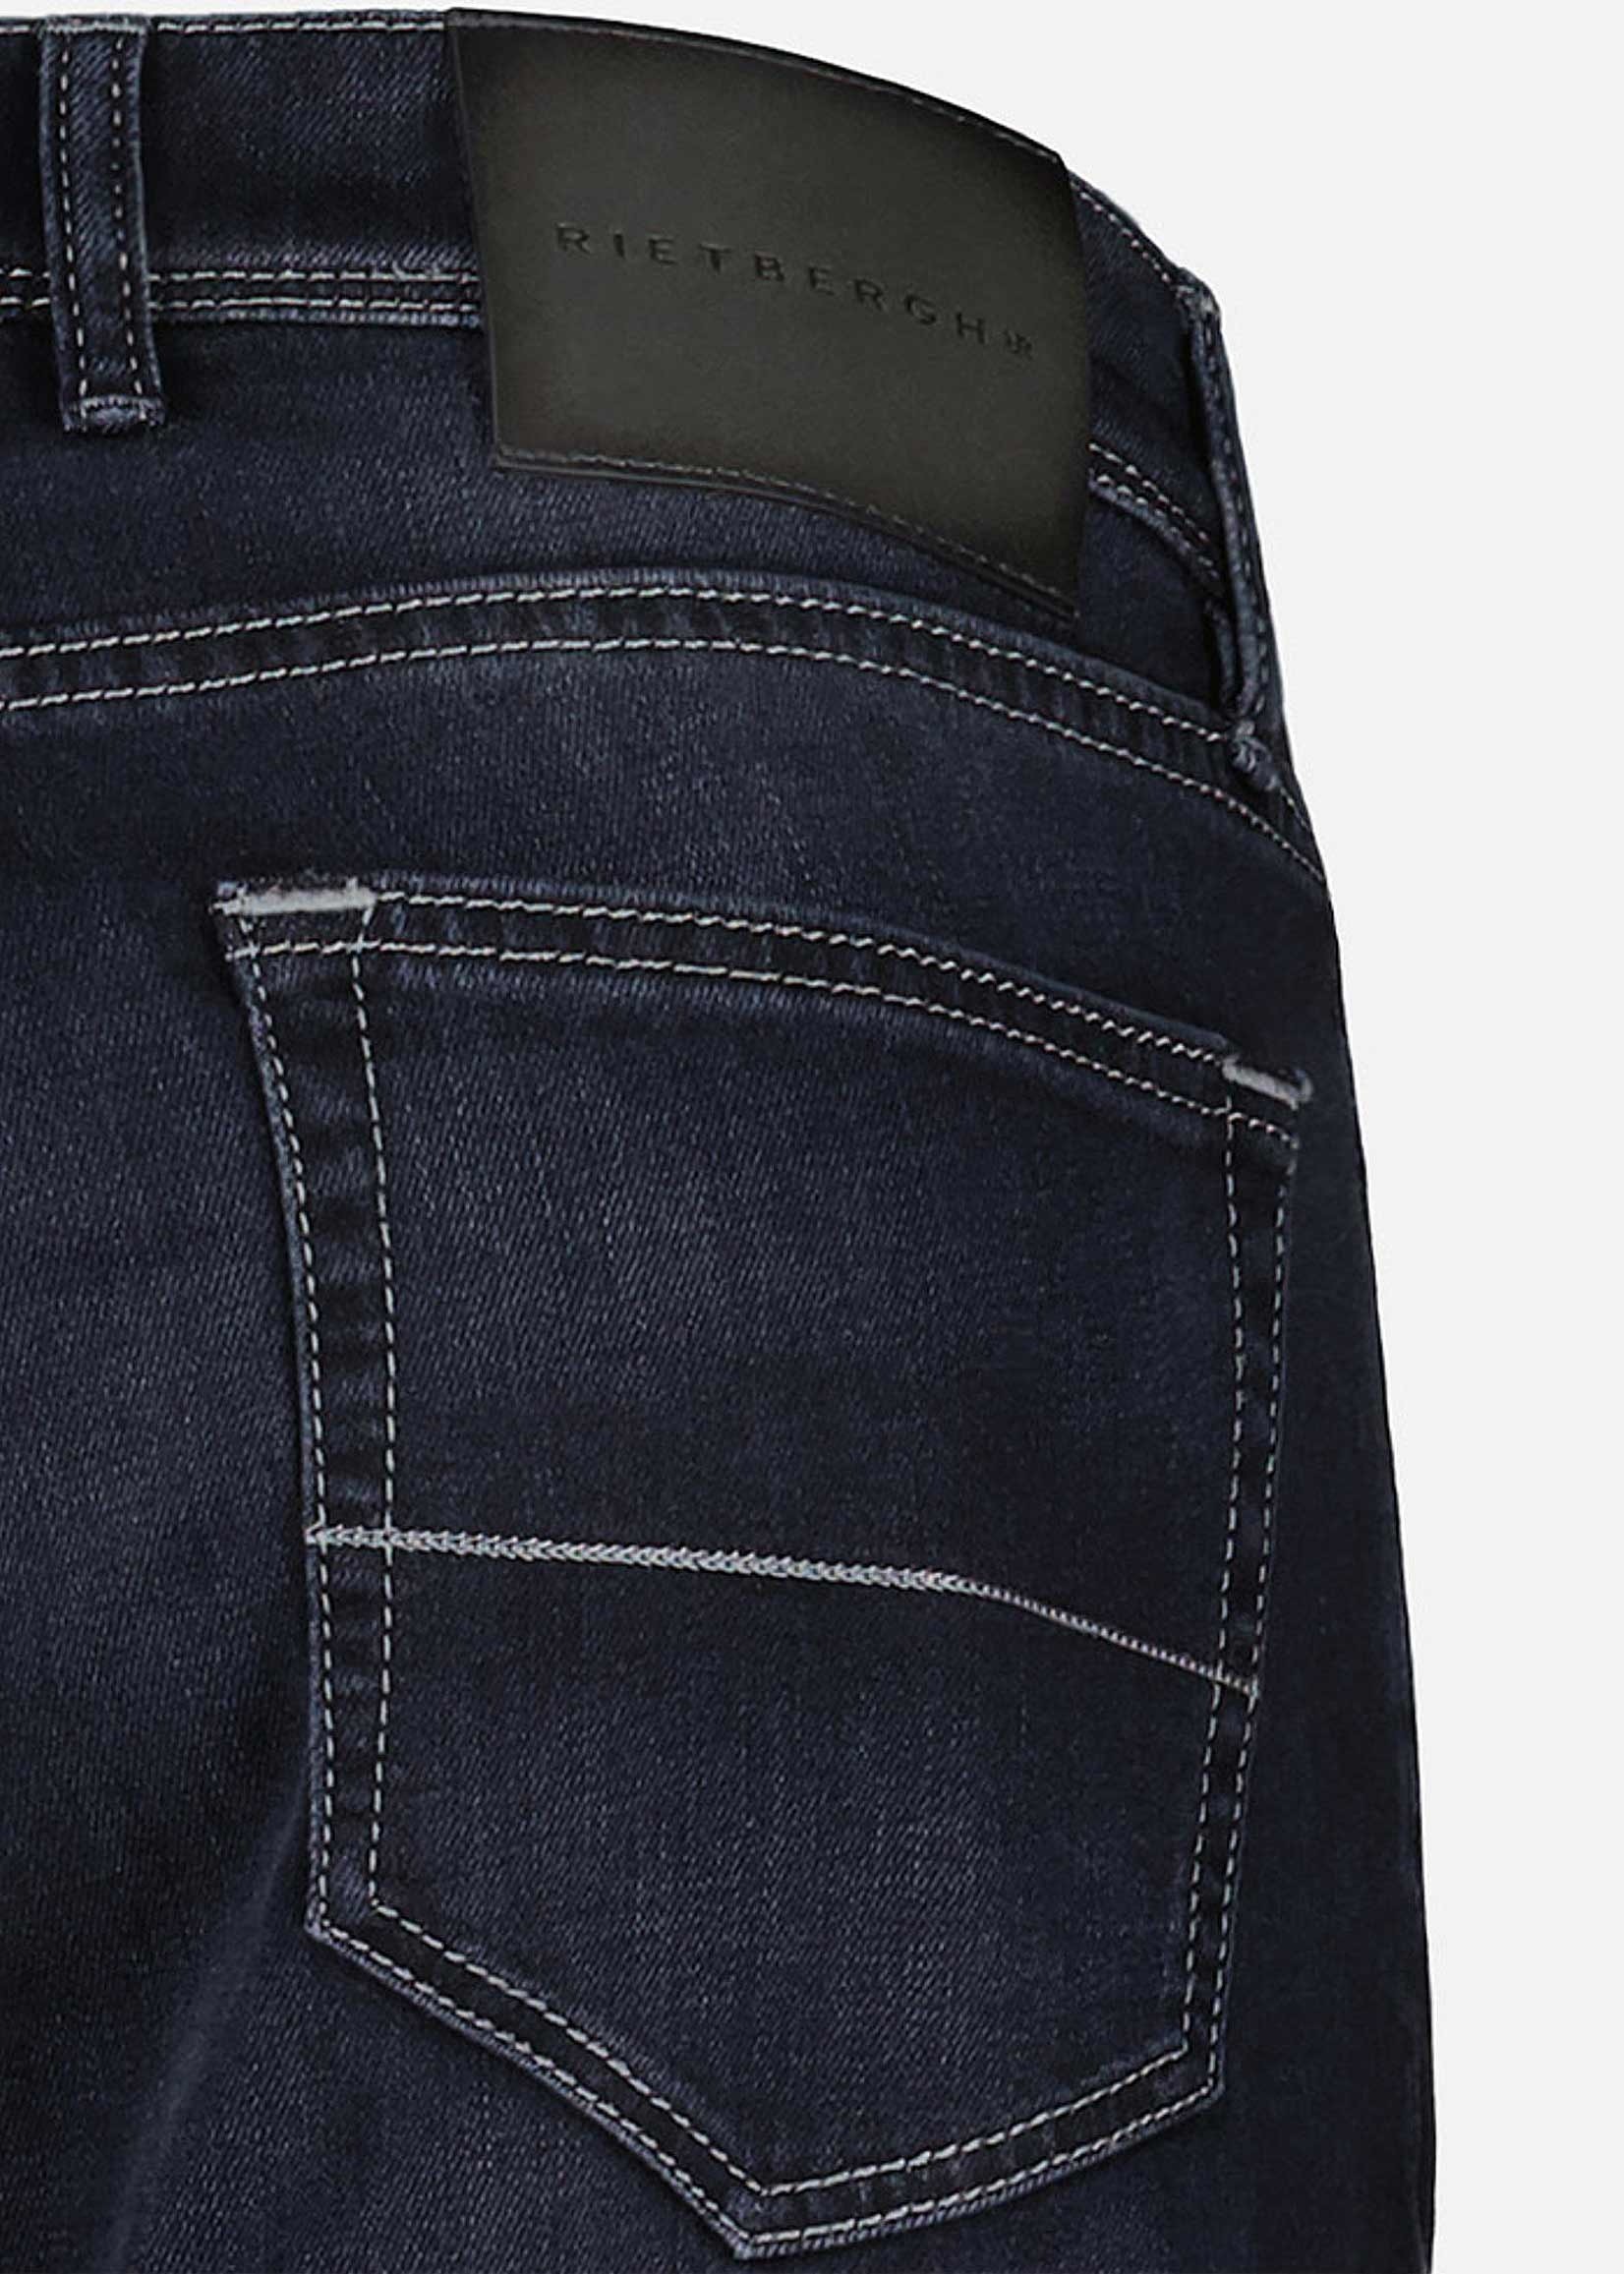 Rietbergh Jeans |  Dark Grey